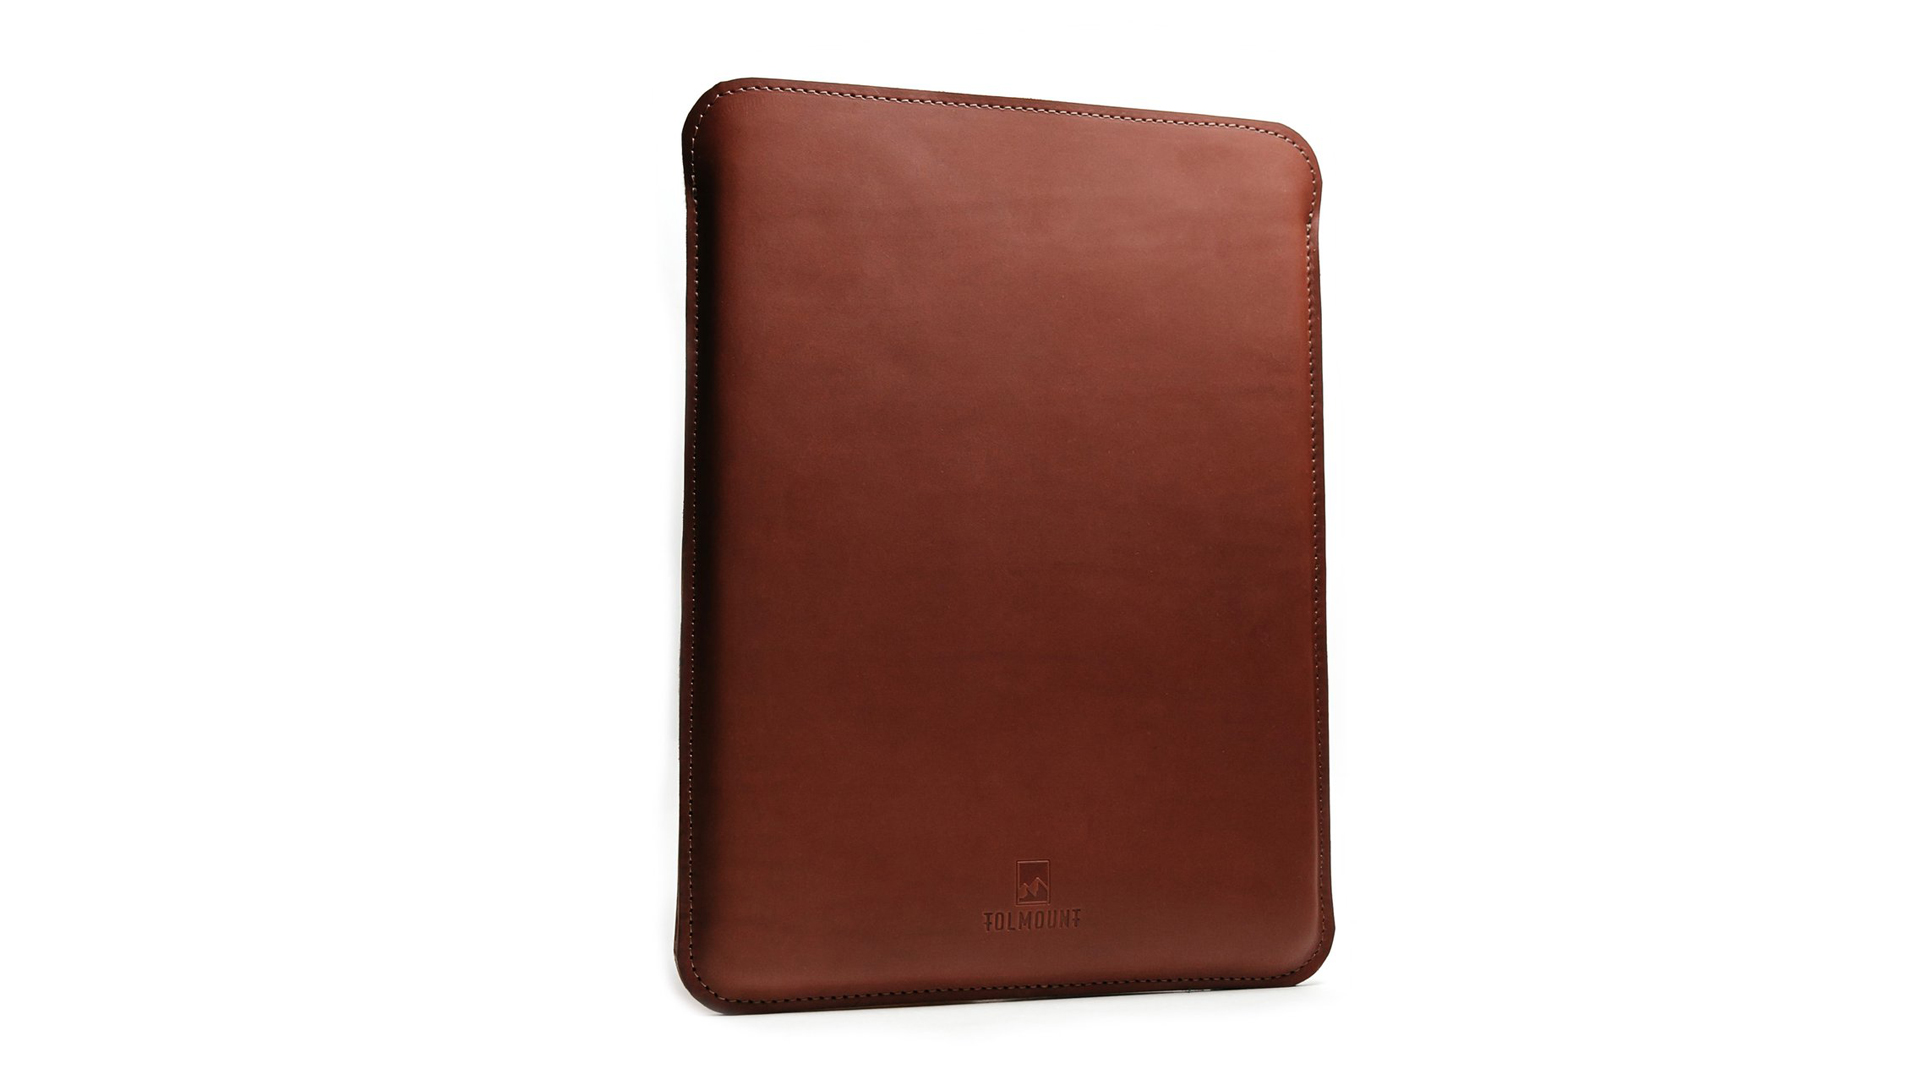 Tolmount MacBook Air sleeve in brown